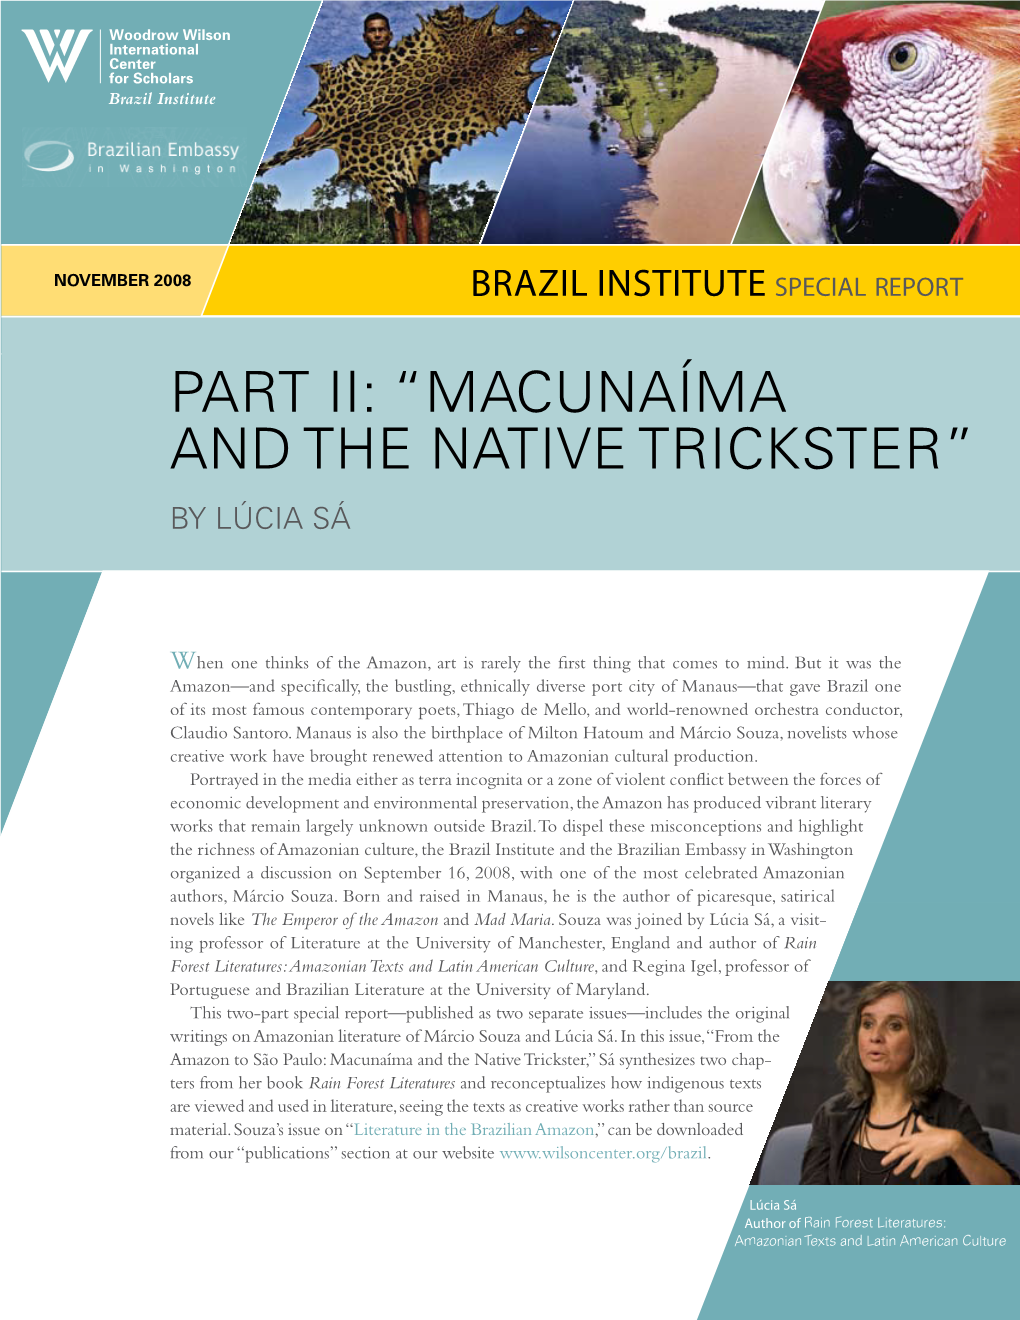 Macunaíma and the Native Trickster” by Lúcia Sá